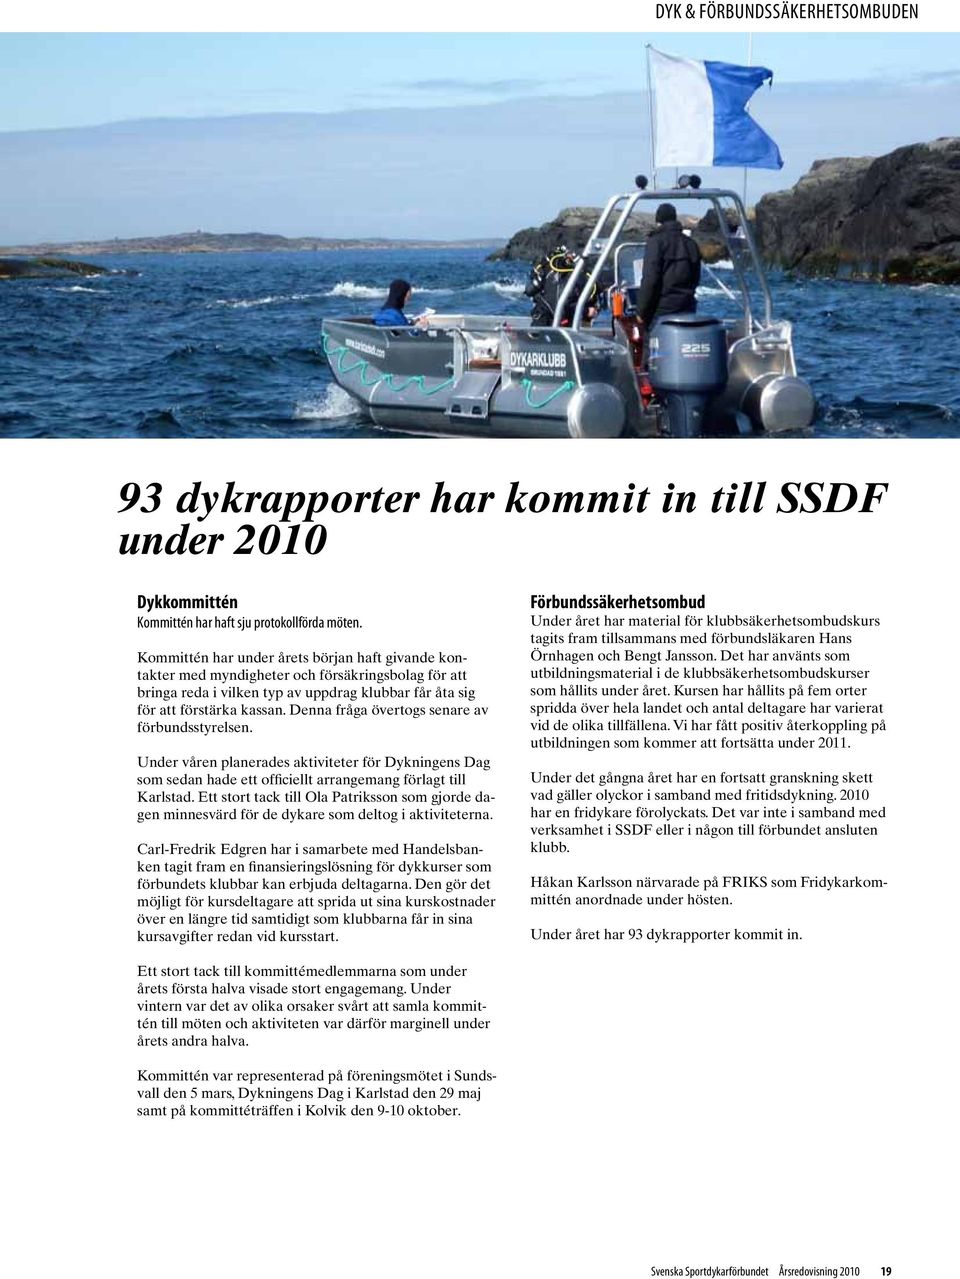 Denna fråga övertogs senare av förbundsstyrelsen. Under våren planerades aktiviteter för Dykningens Dag som sedan hade ett officiellt arrangemang förlagt till Karlstad.